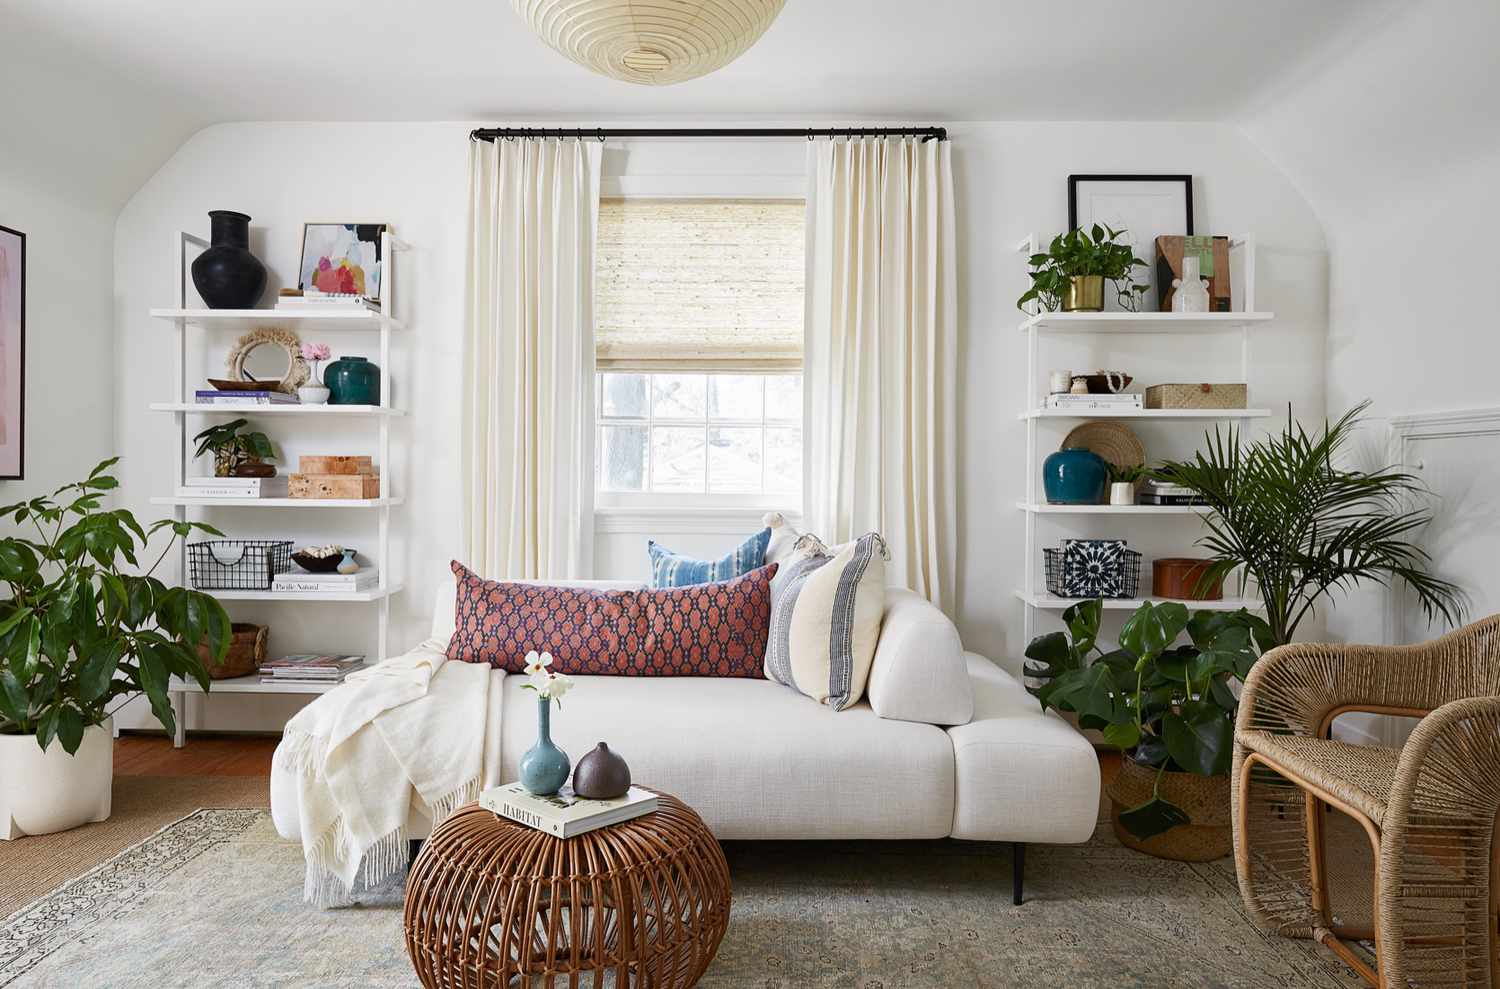 A creamy white living room has a dark peach throw as a focal point